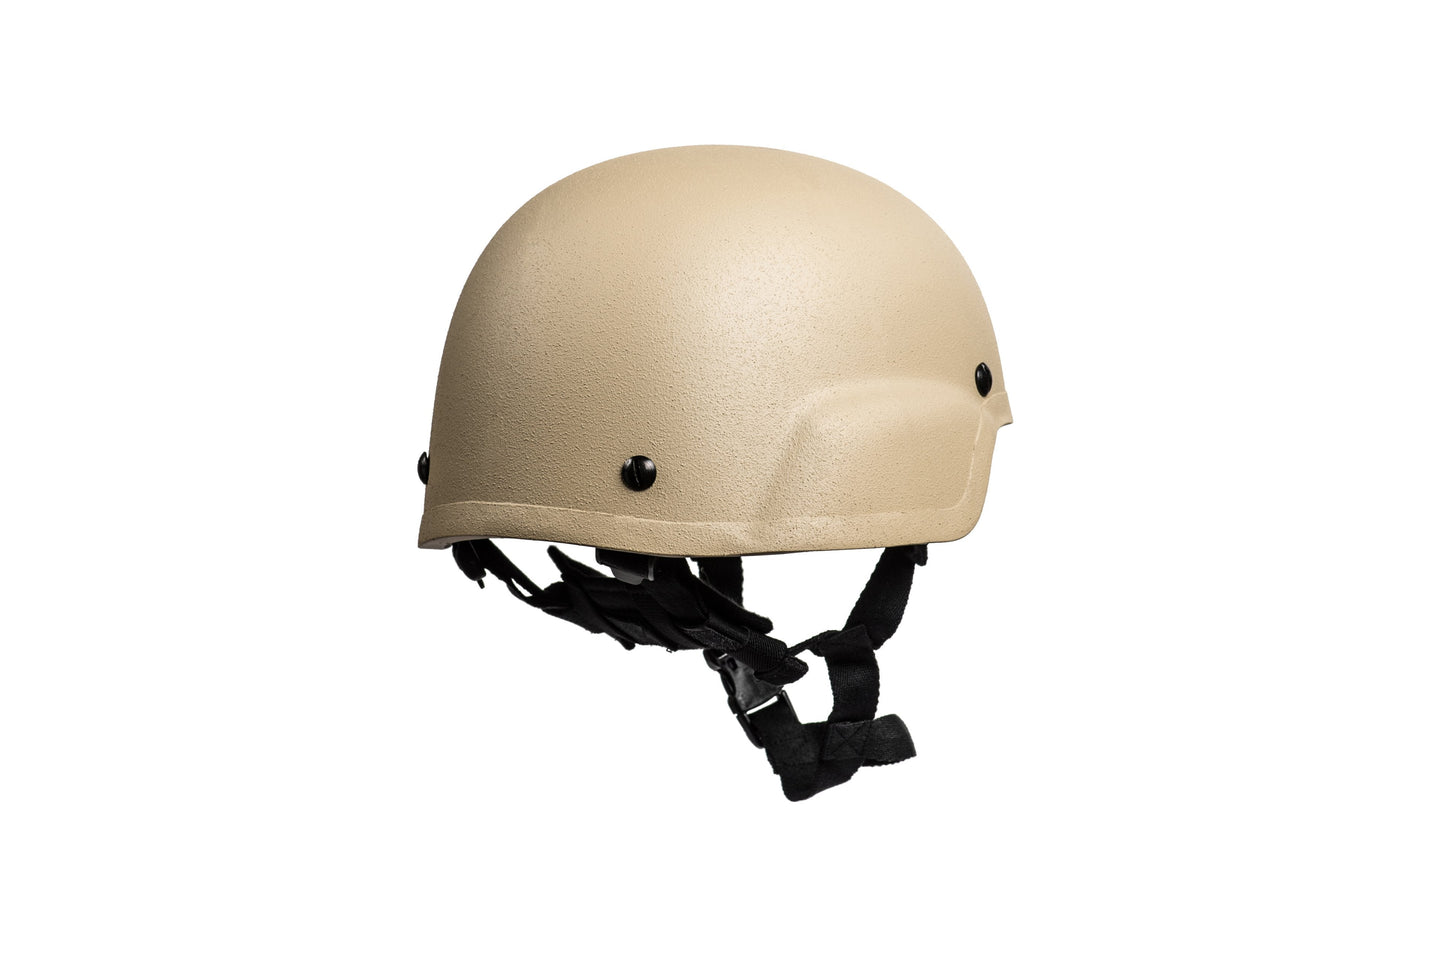 MICH/ECH HHV BTE® Ballistic Helmet